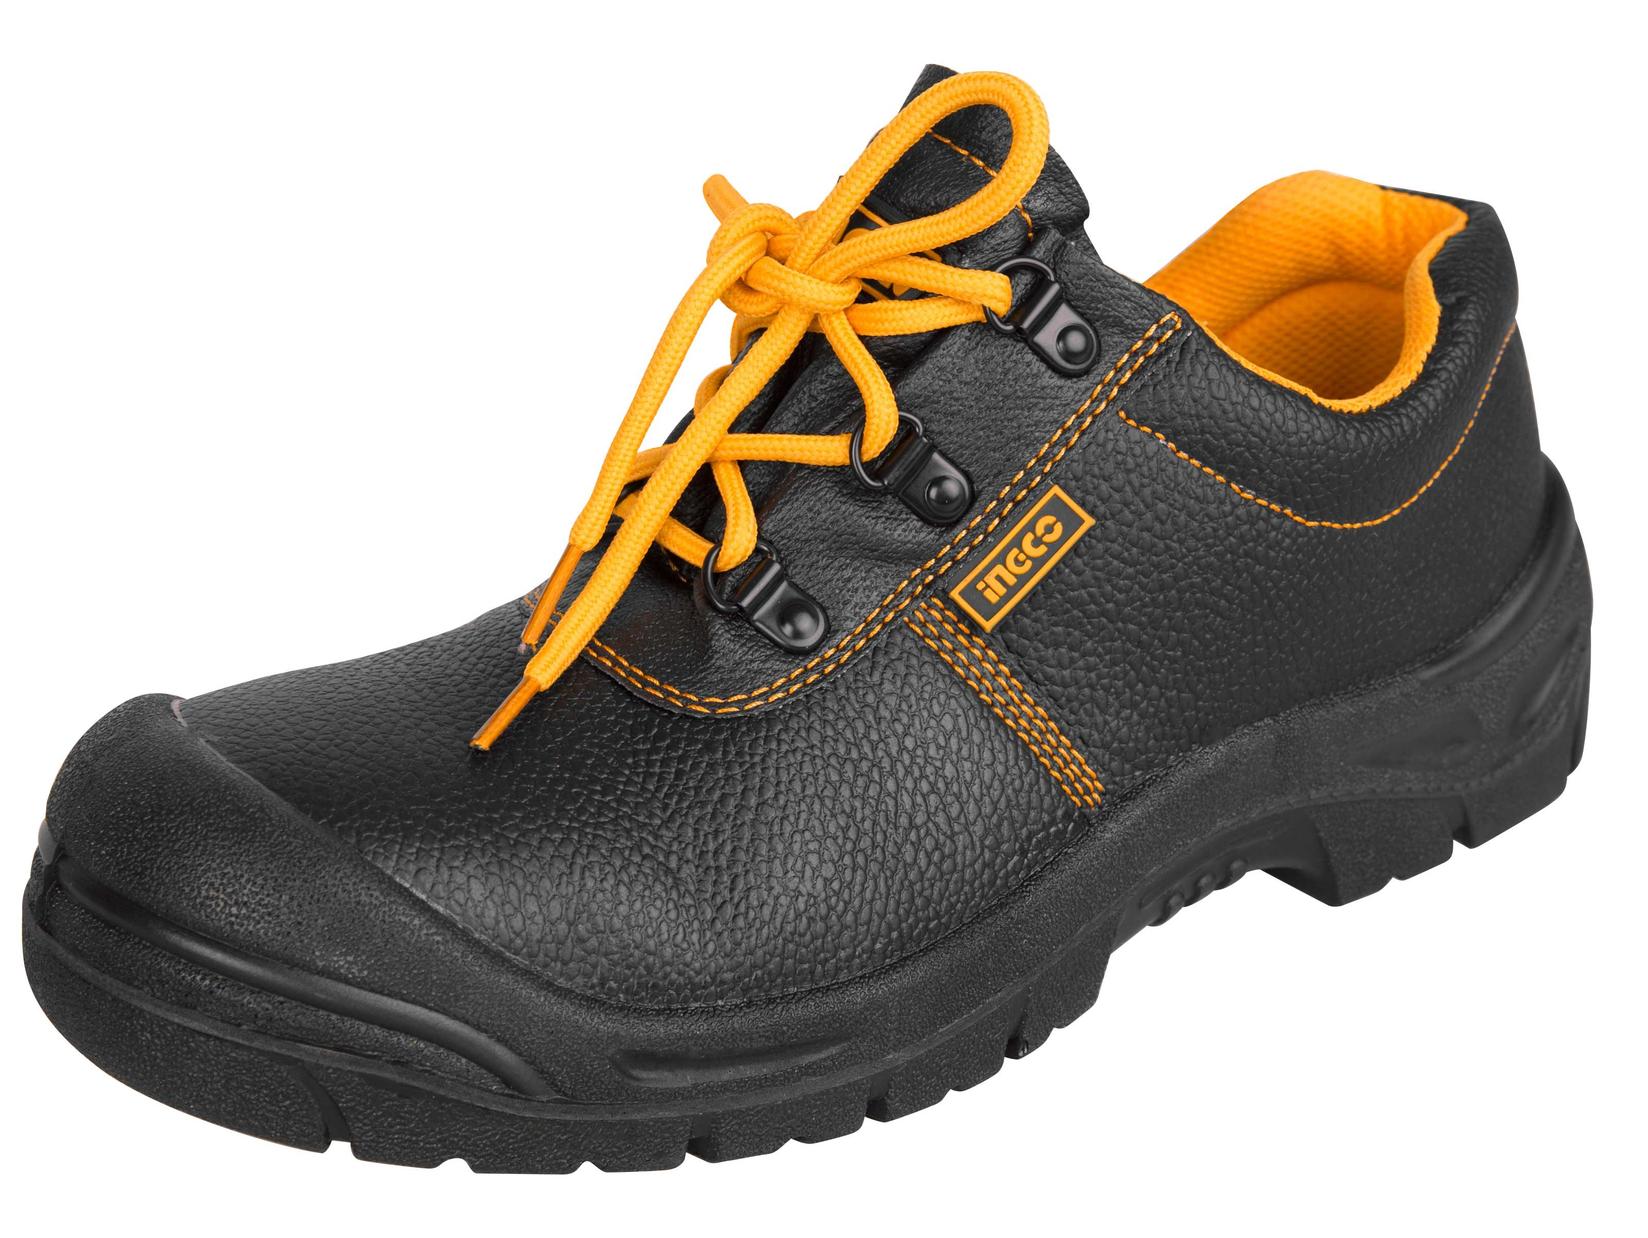 INGCO Zaštitne cipele plitke 40 crne